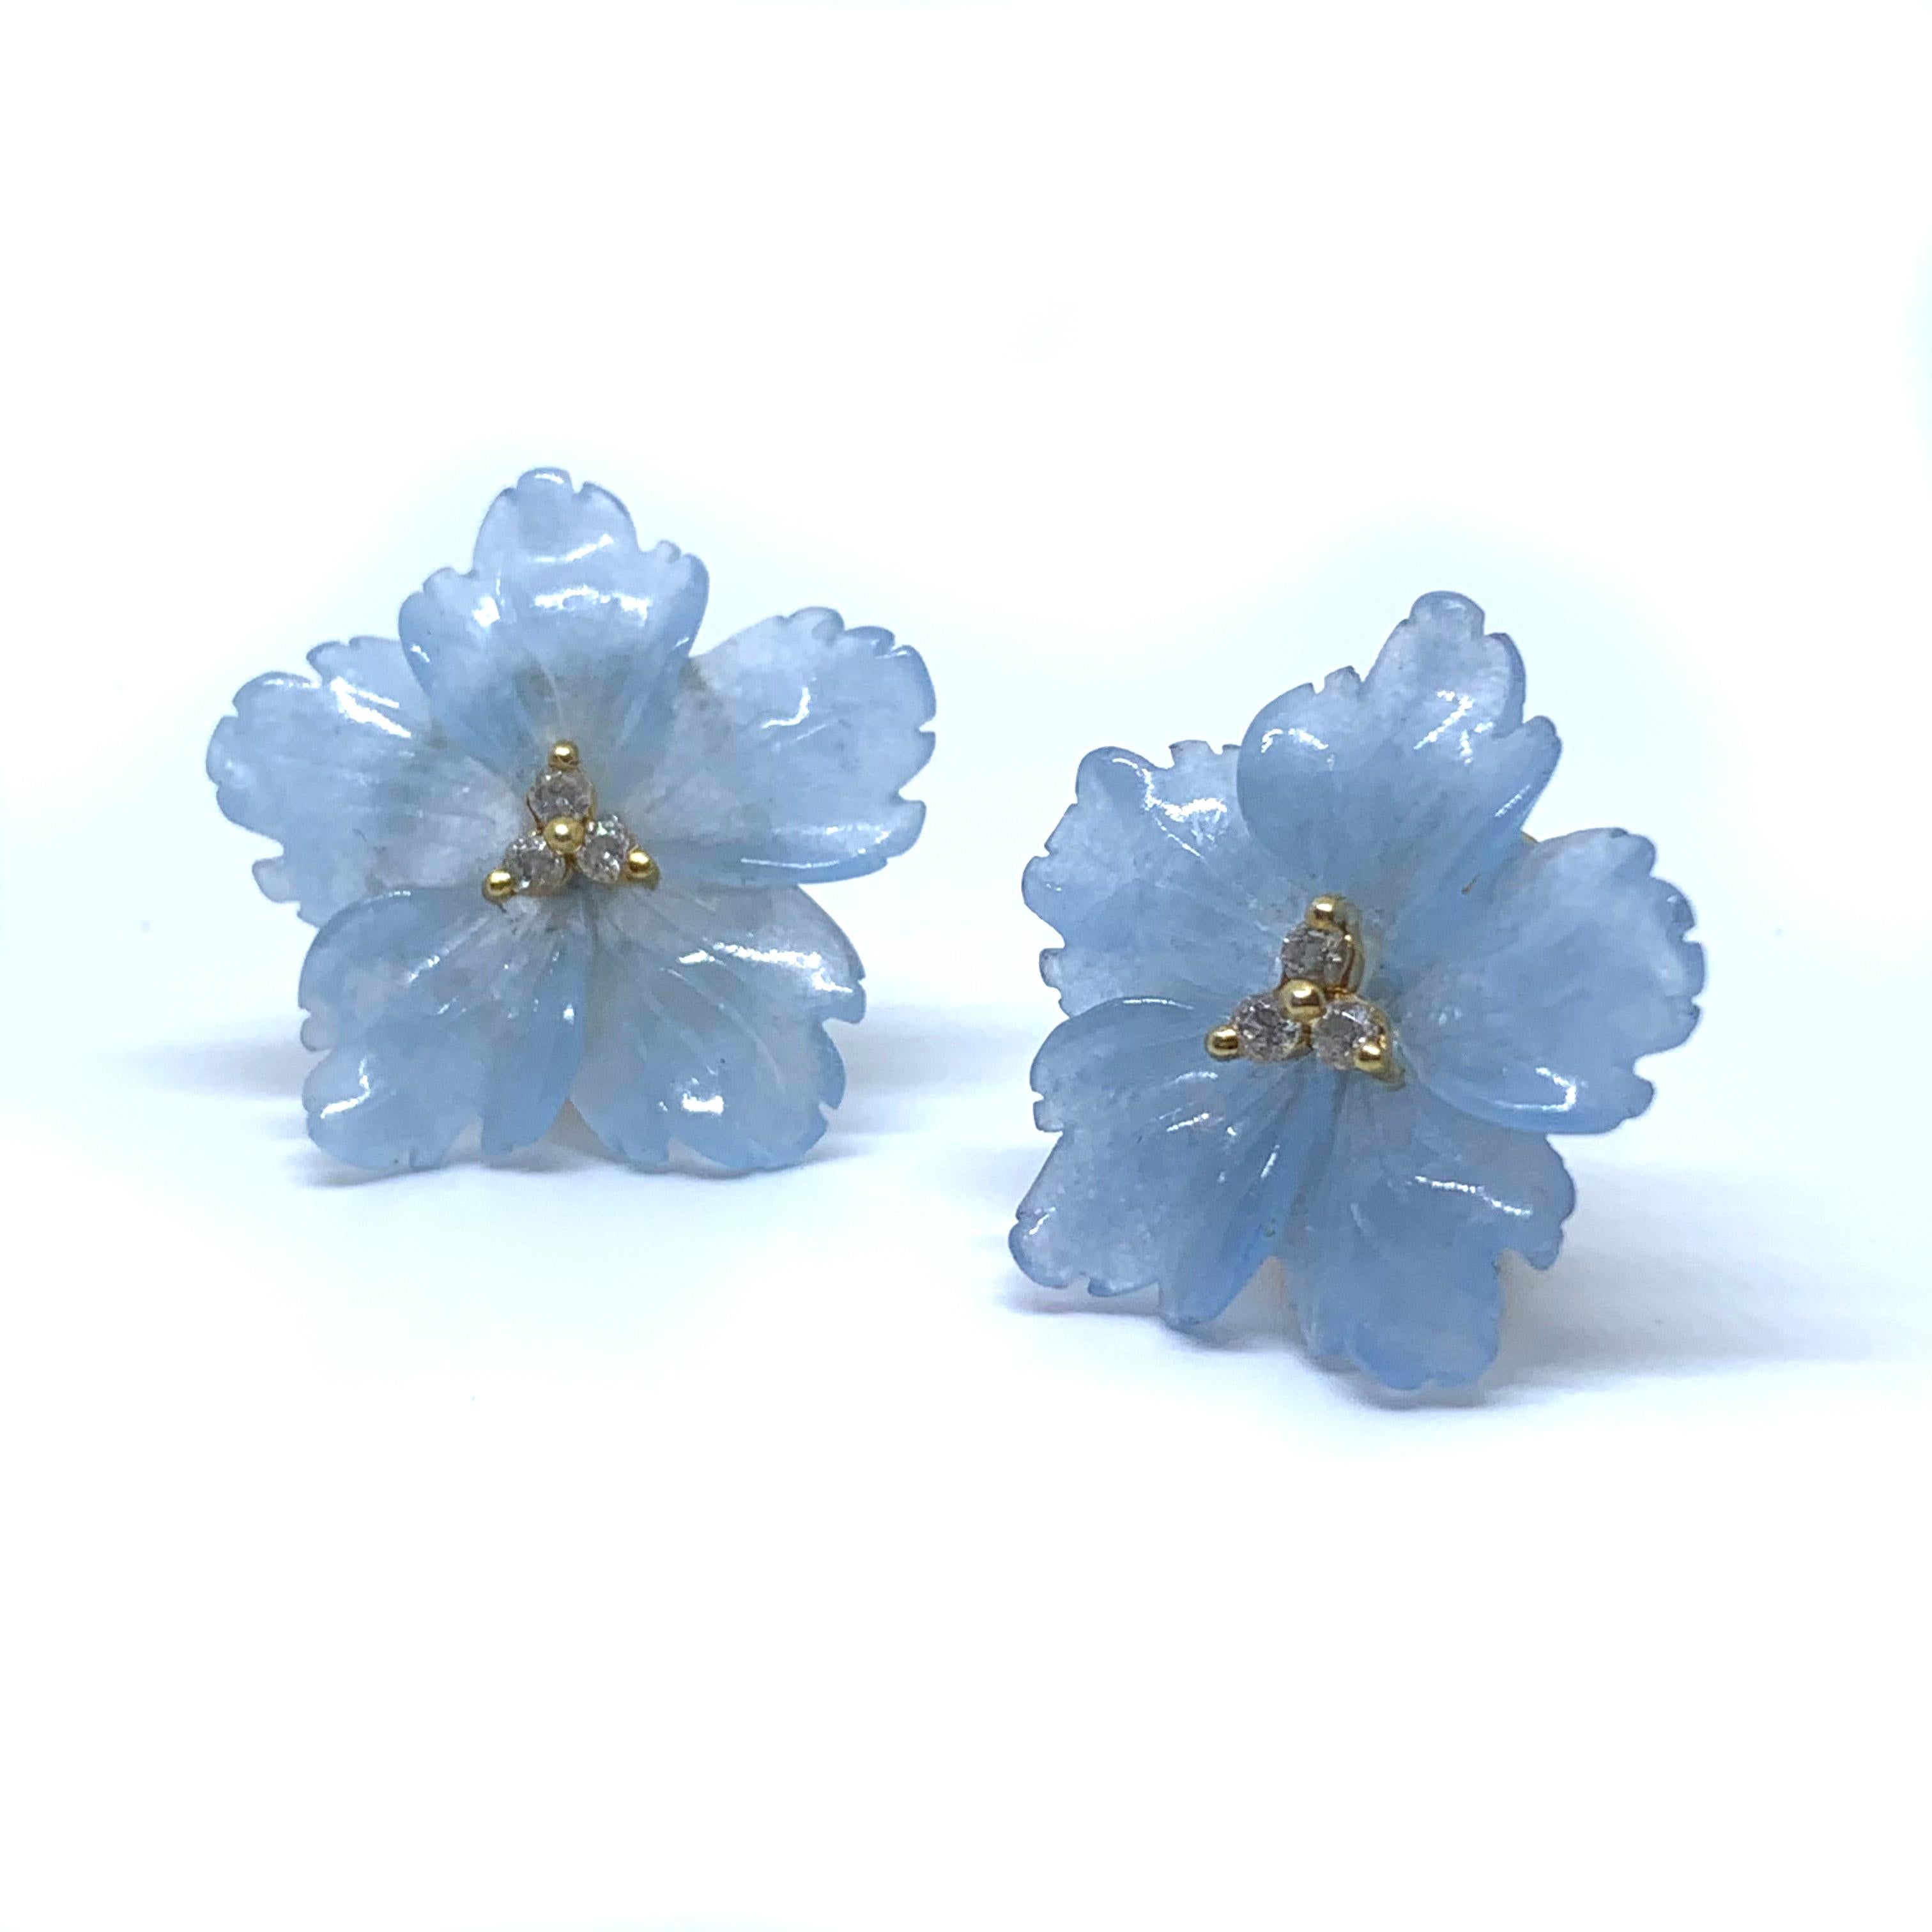 Elegante 24mm geschnitzte blaue Quarzit Blume Vermeil Ohrringe

Dieses wunderschöne Paar Ohrringe besteht aus 24 mm blauem Quarzit, der in eine wunderschöne 3D-Blume geschnitzt wurde, die in der Mitte mit runden simulierten Diamanten verziert ist.